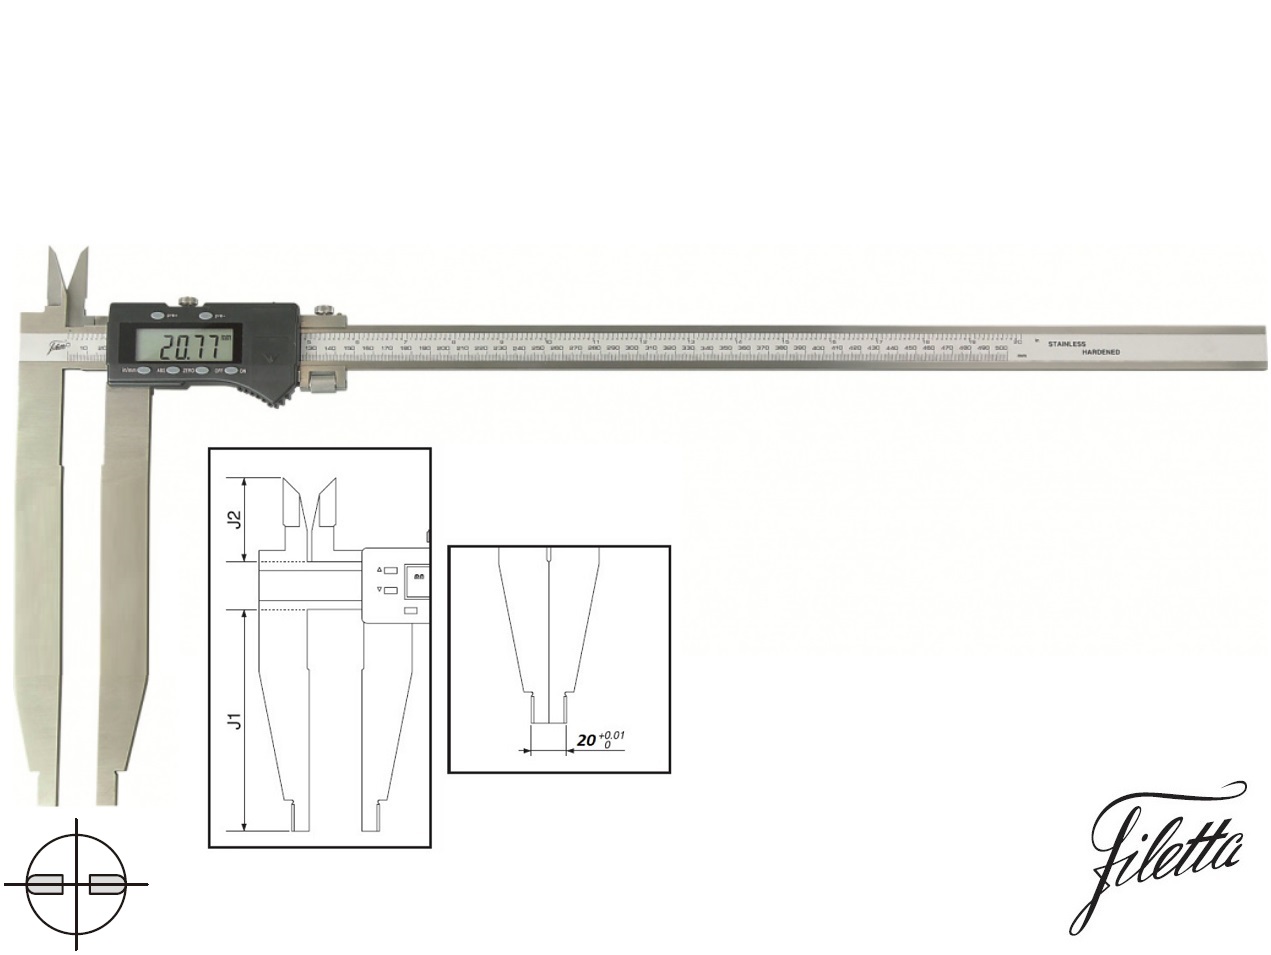 Digitální posuvné měřítko Filetta 0-1000/300 mm s měřicími nožíky pro vnitřní měření